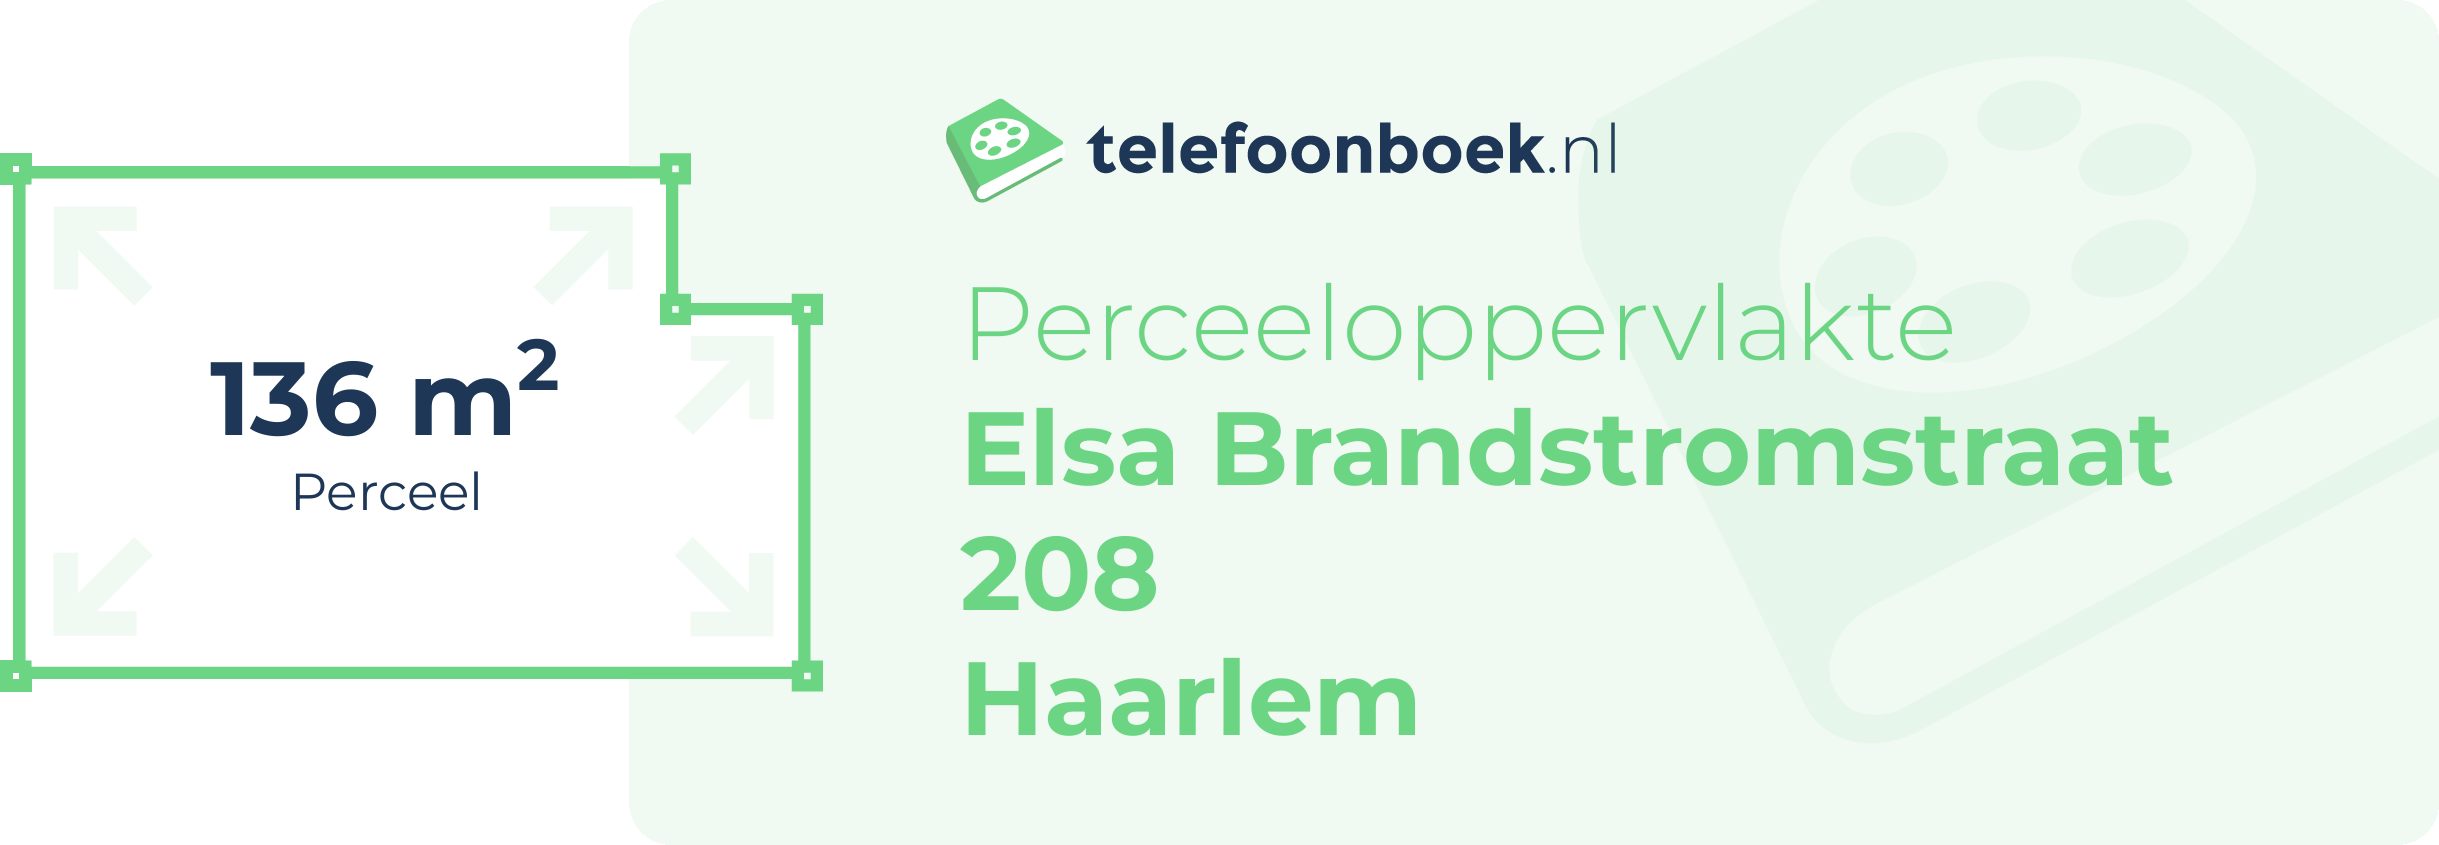 Perceeloppervlakte Elsa Brandstromstraat 208 Haarlem